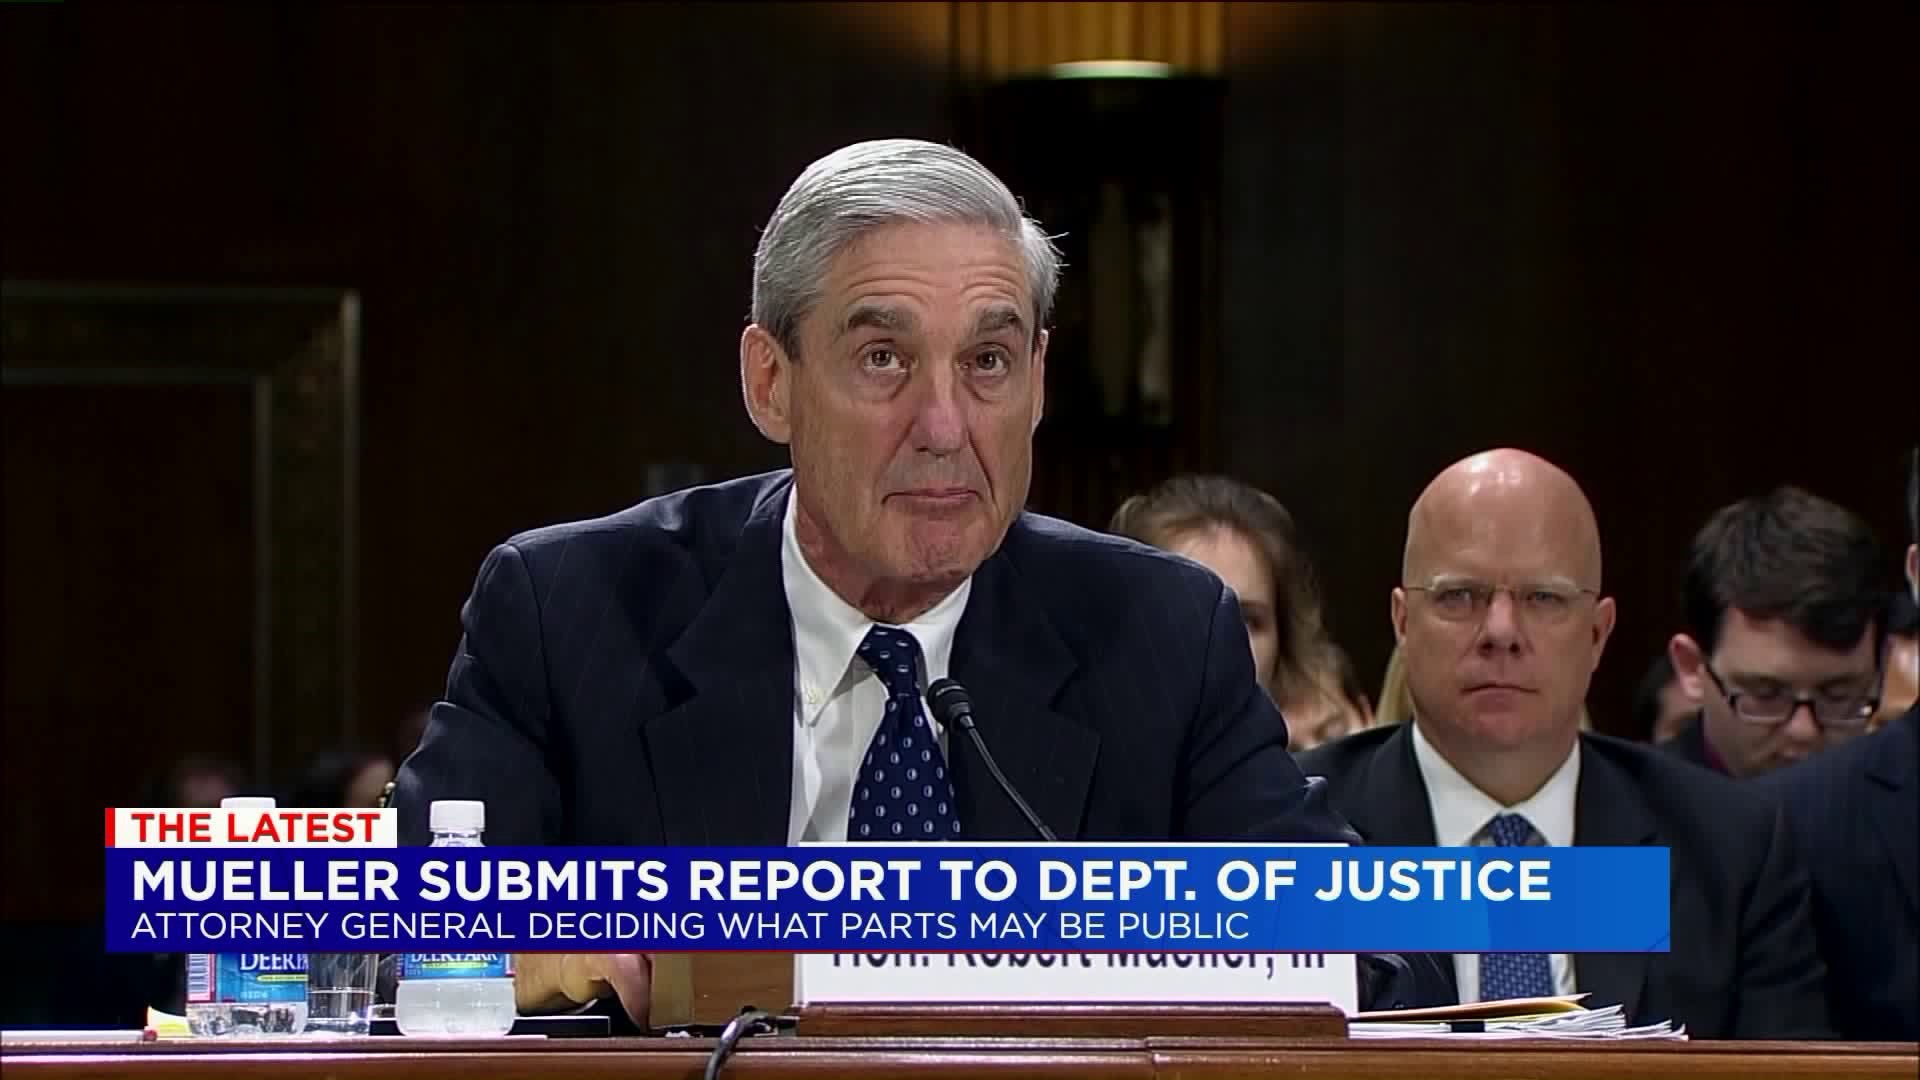 Mueller turns in report - reaction